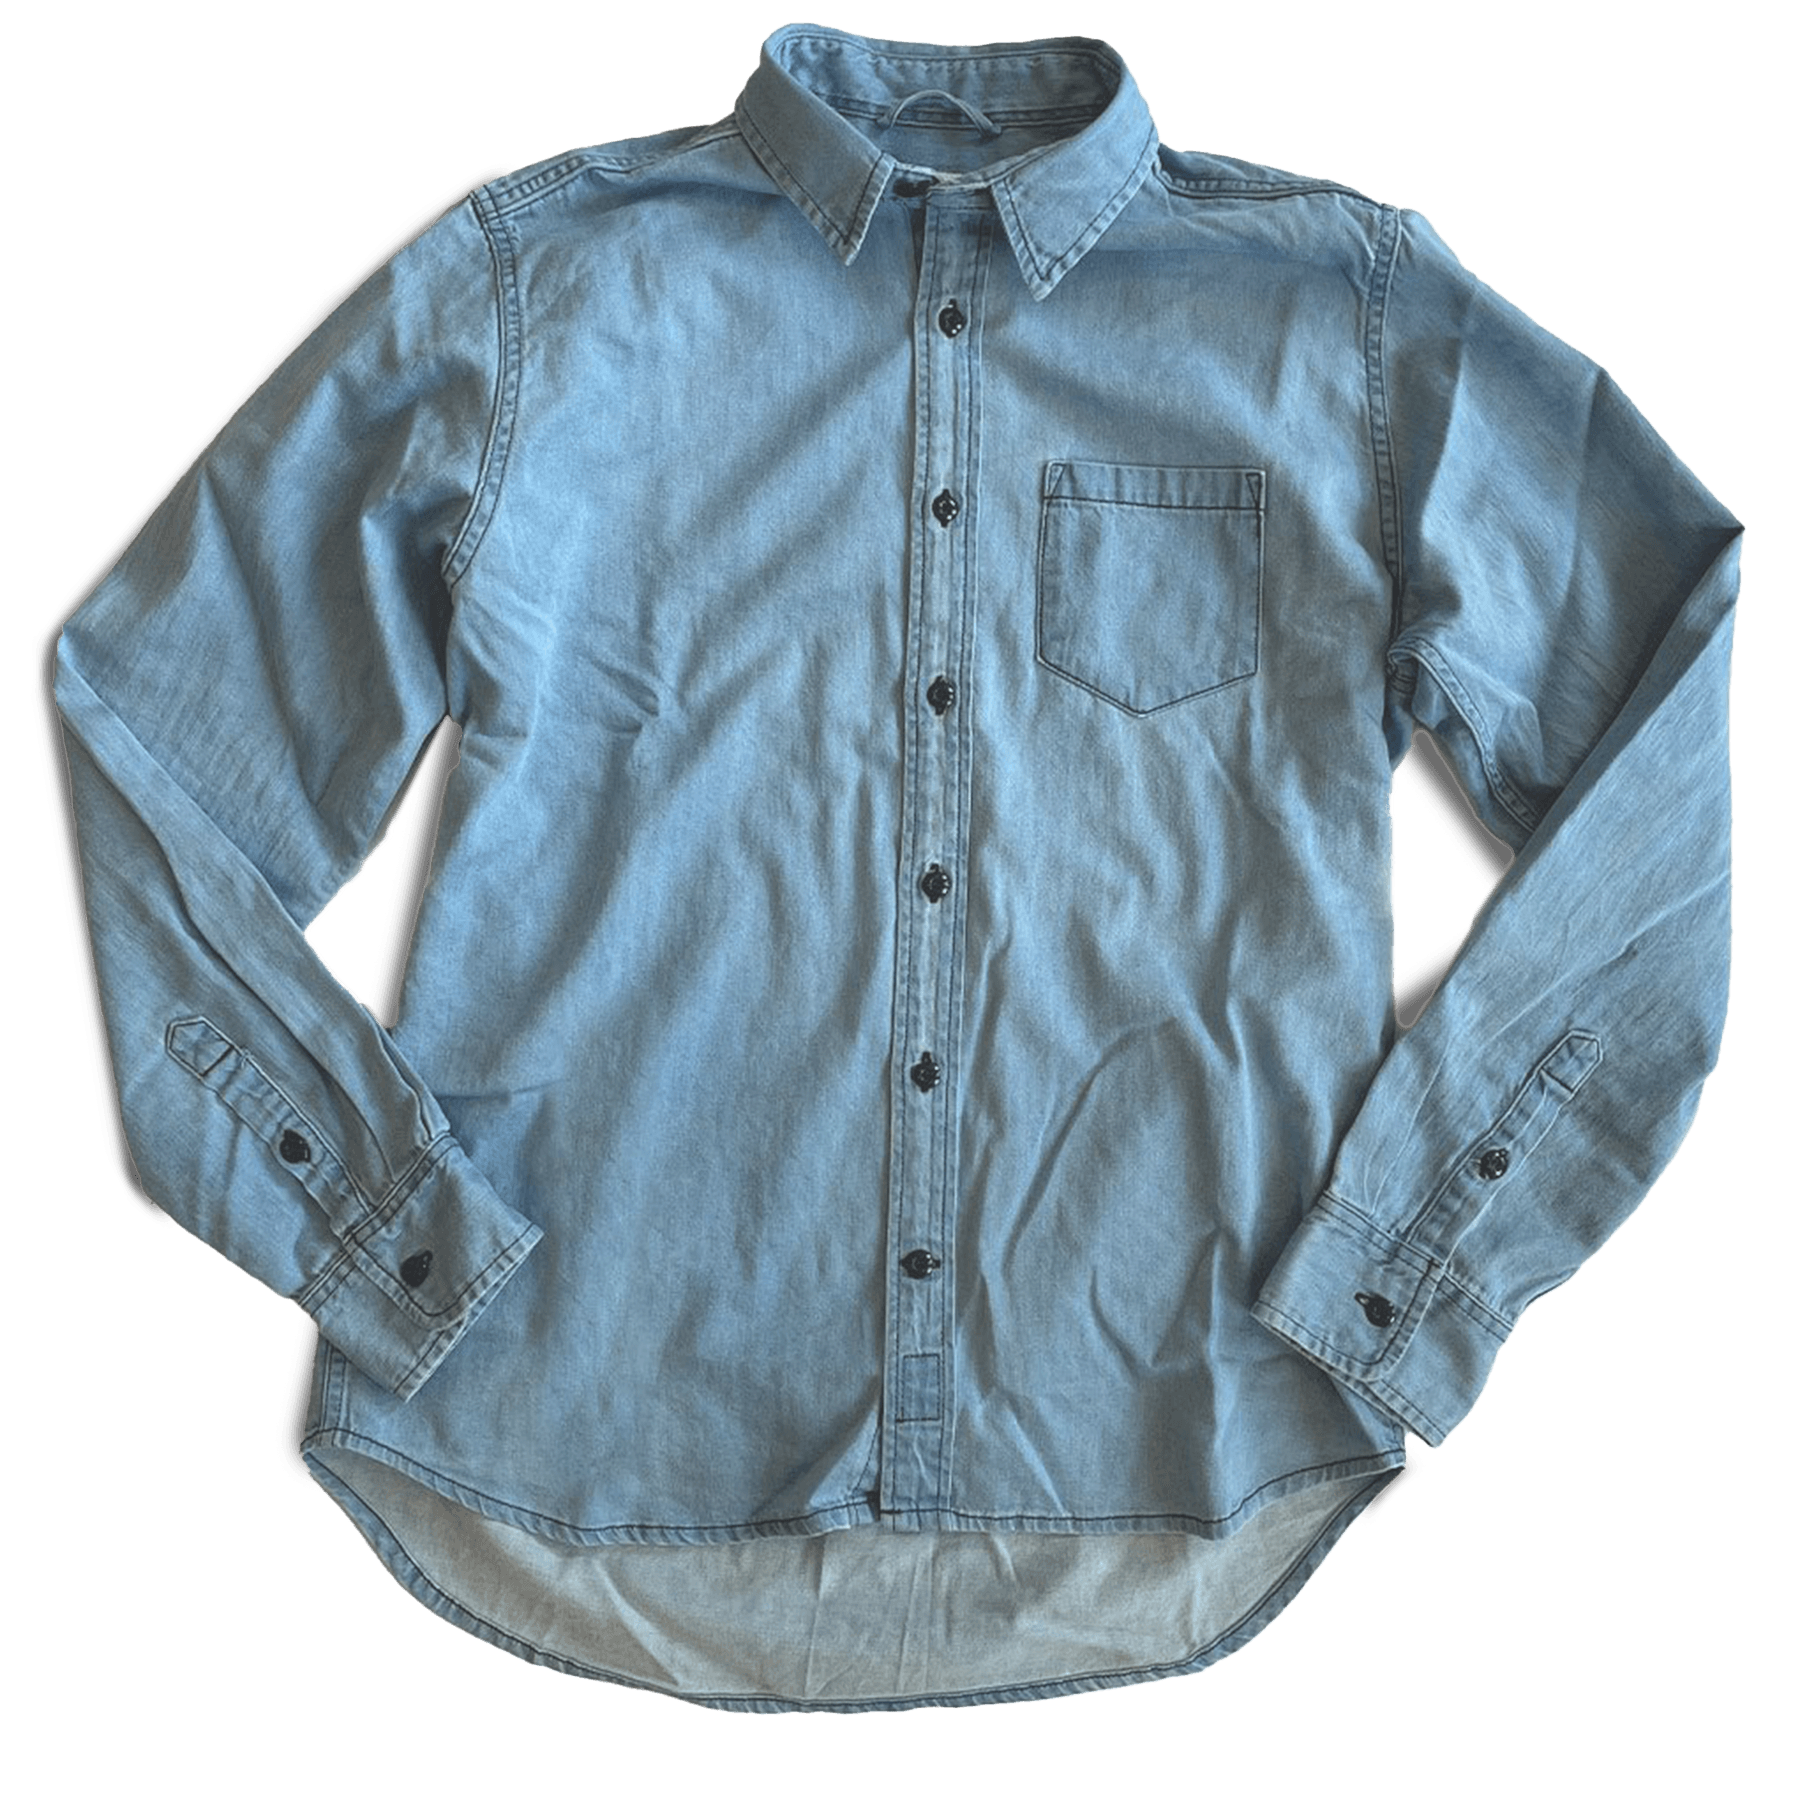 Dean Shirt - Faded Natural Indigo Twill - grown&sewn